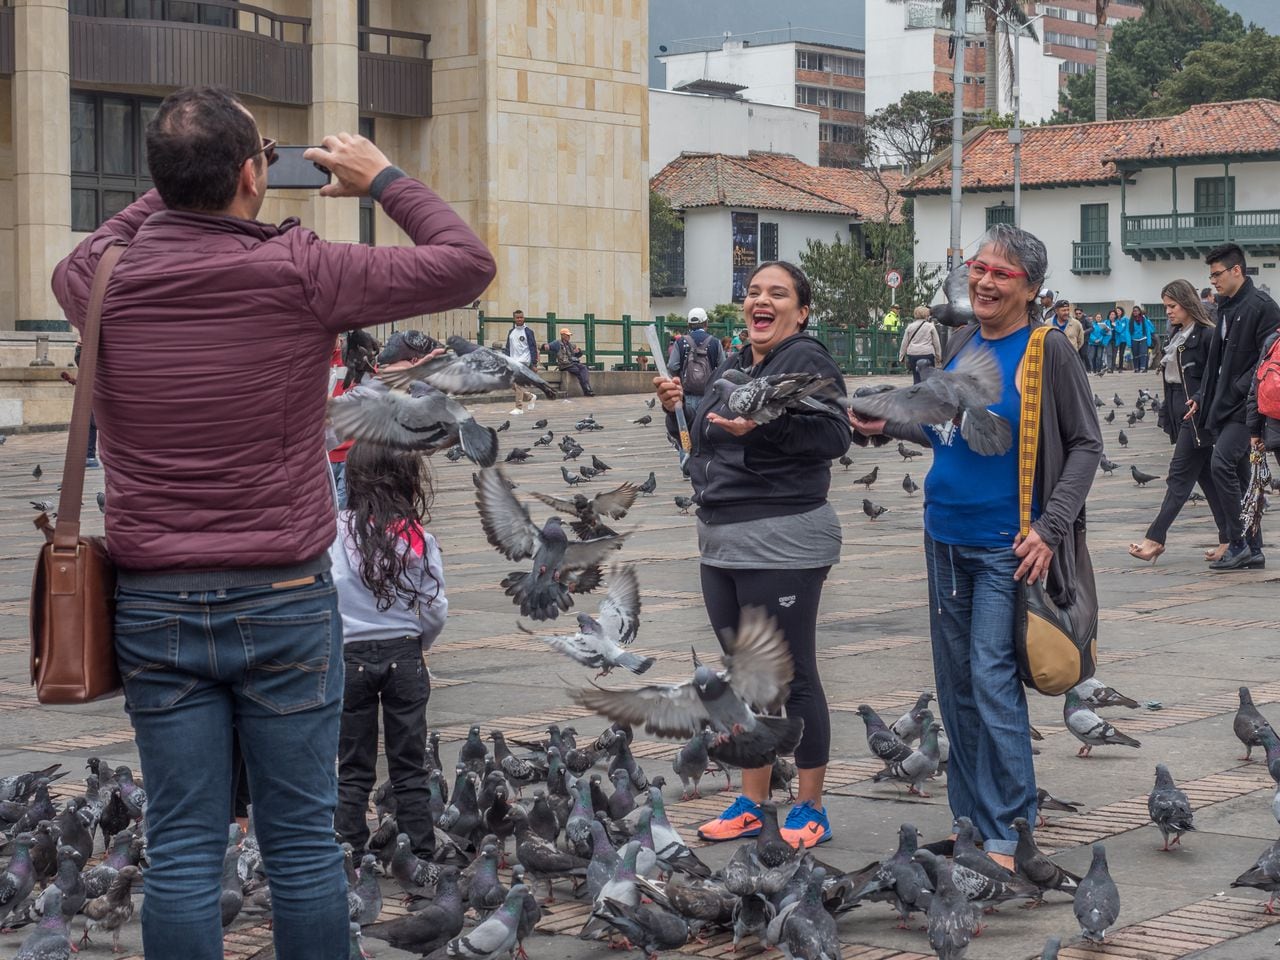 La sopreboblación de estas aves en la Plaza de Bolívar se ha convertido en un atractivo para los turistas. La foto de las palomas revoloteando en los alrededores es una imagen recurrente que buscan tomarse quienes visitan por primera vez la ciudad.